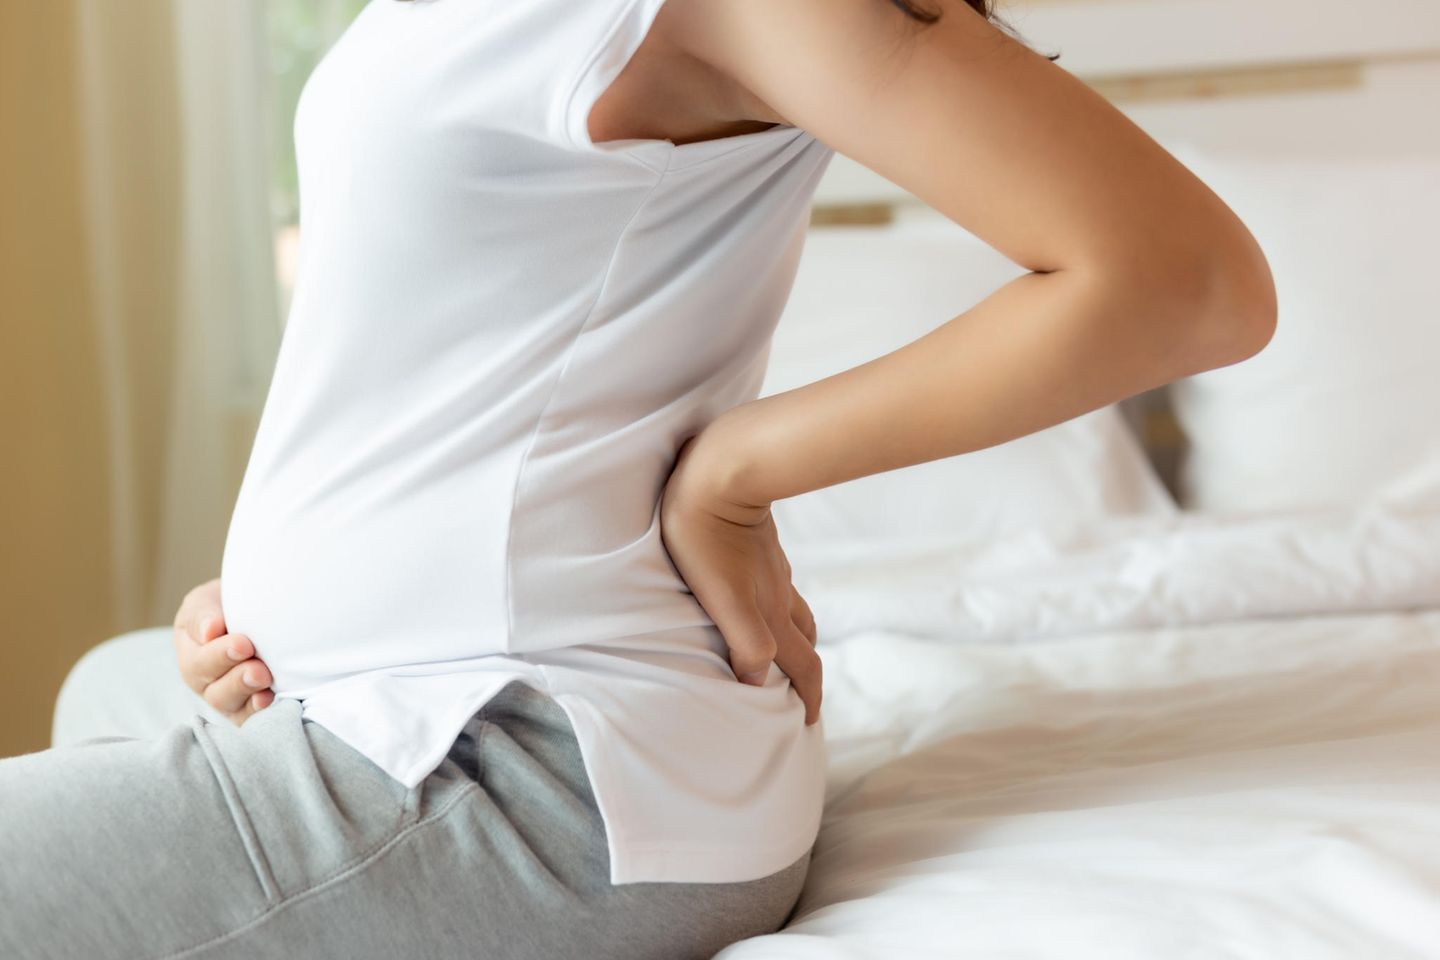 Hinterwandplazenta: Schwangere Person sitzt auf Bett und fasst sich an Bauch und Rücken